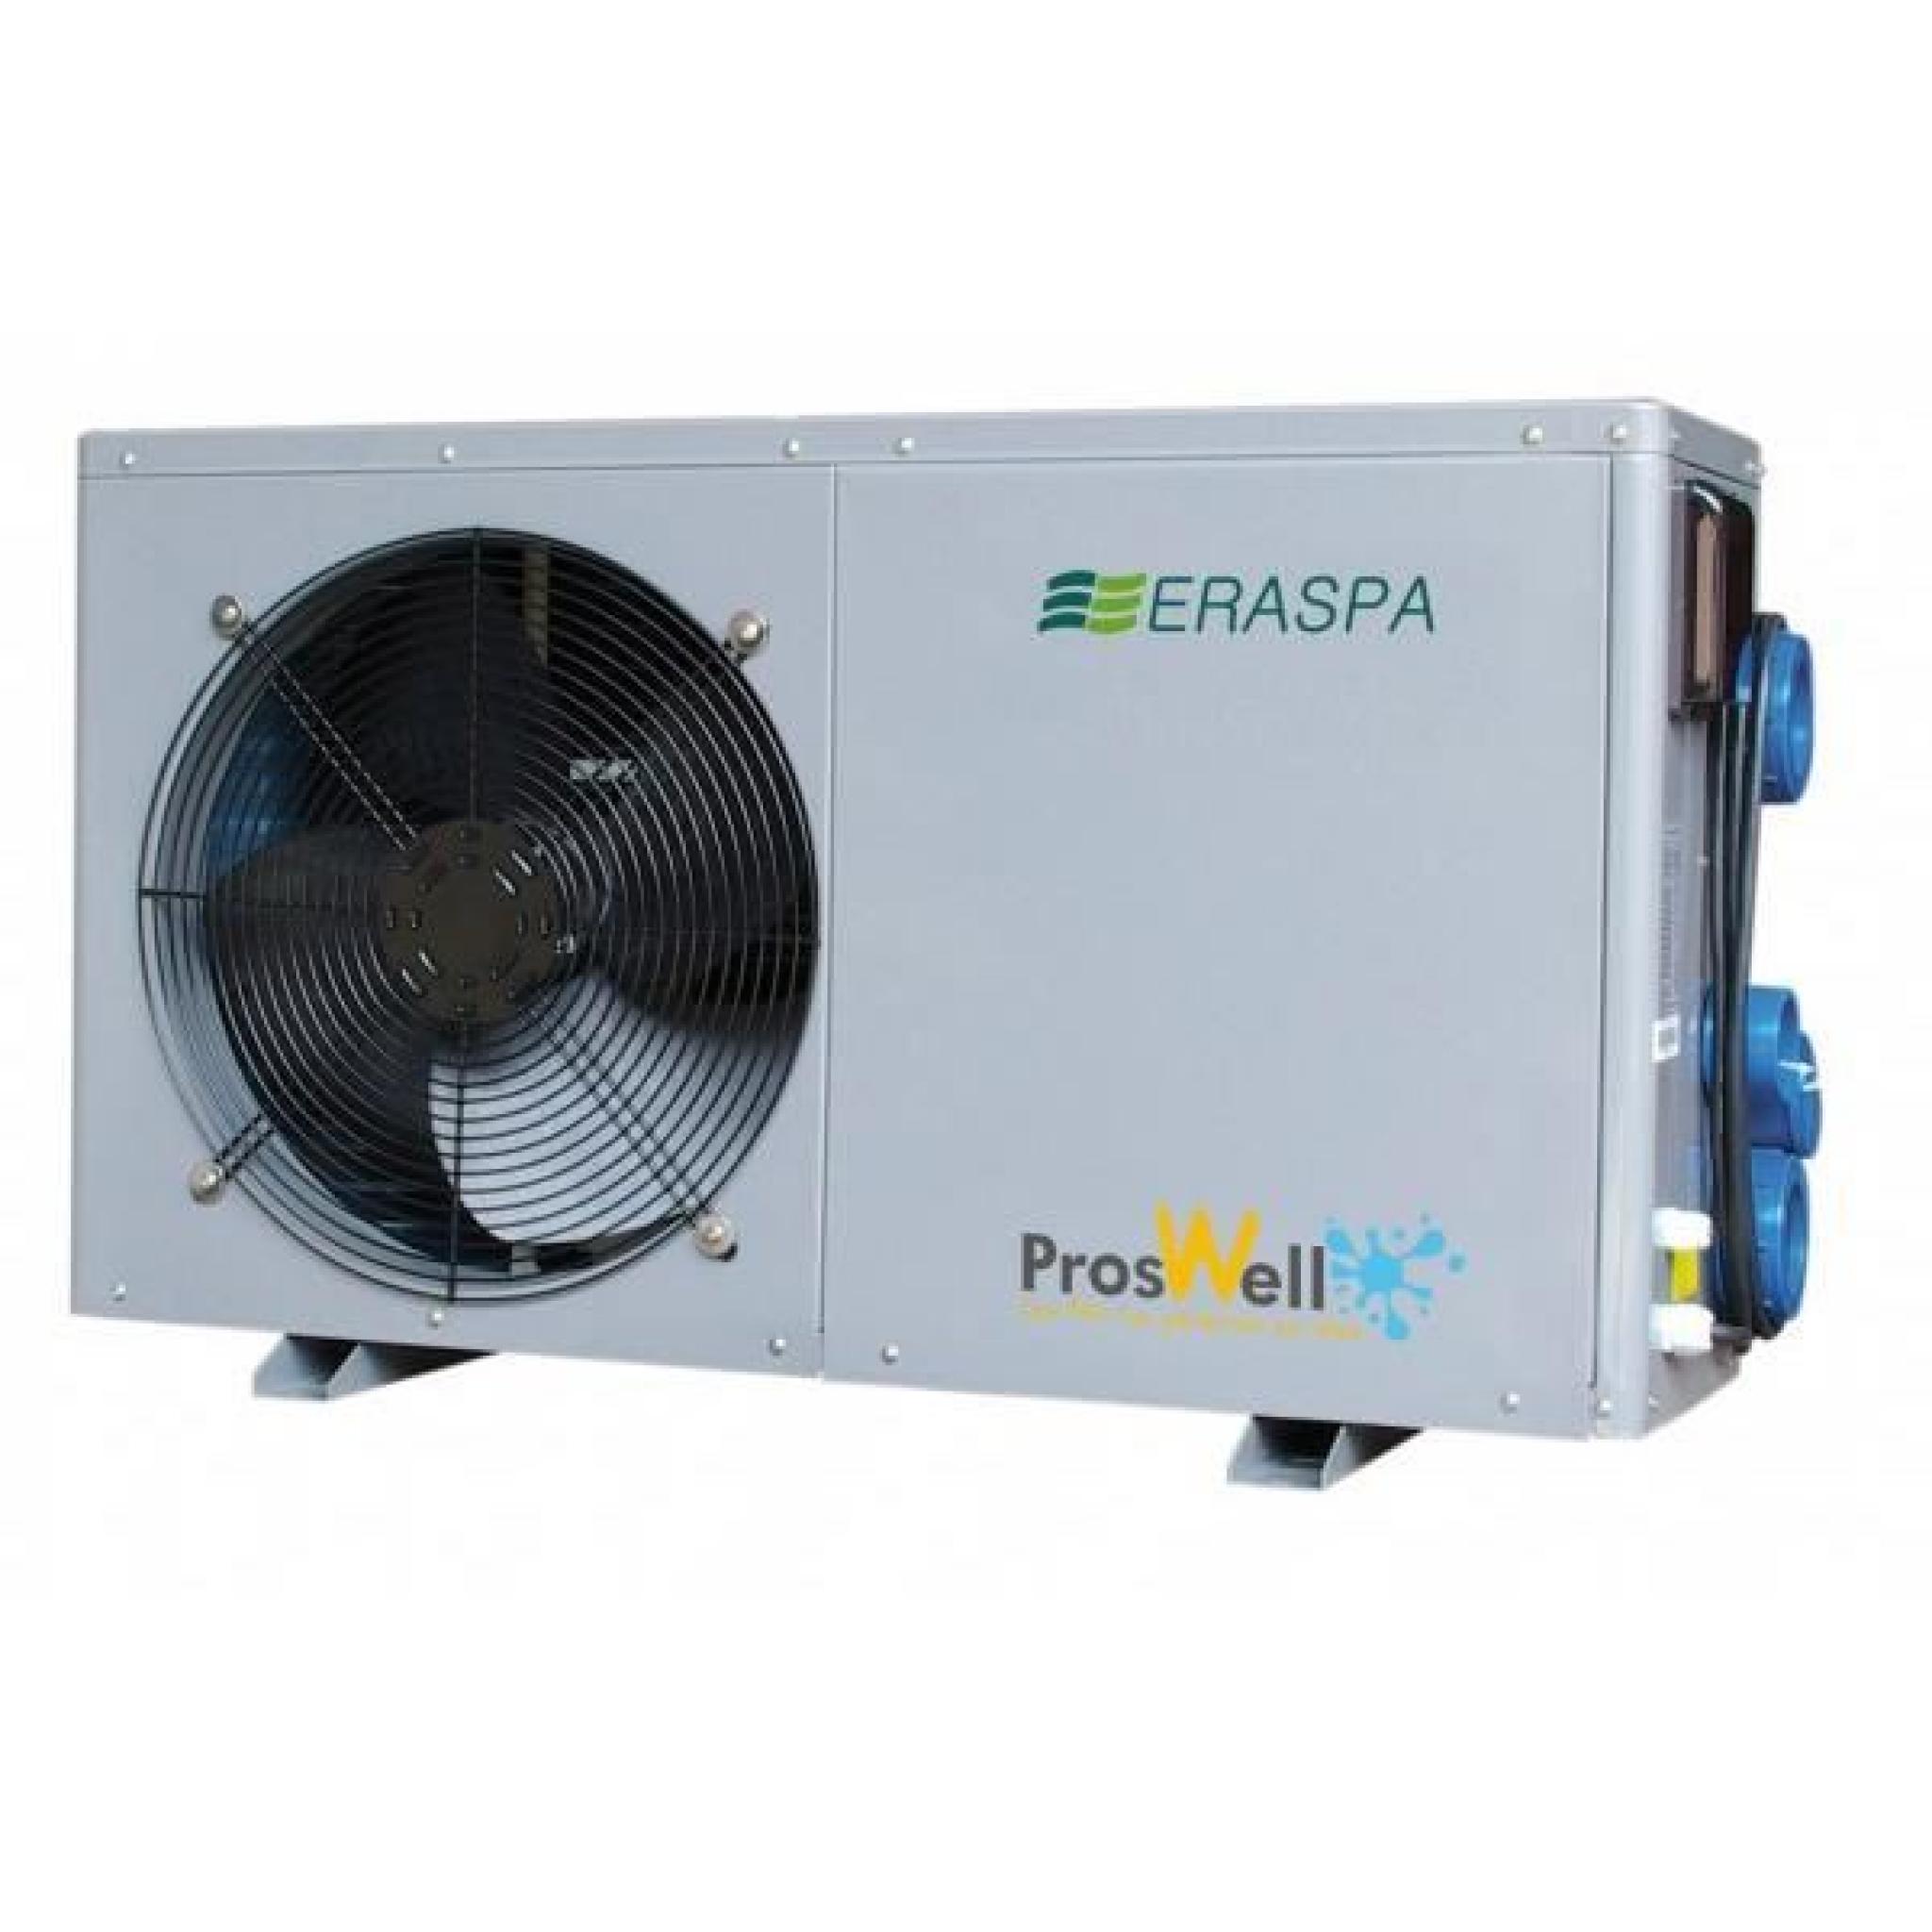 Pompe à chaleur Proswell Eraspa - 3,7 kW pour 25 m3